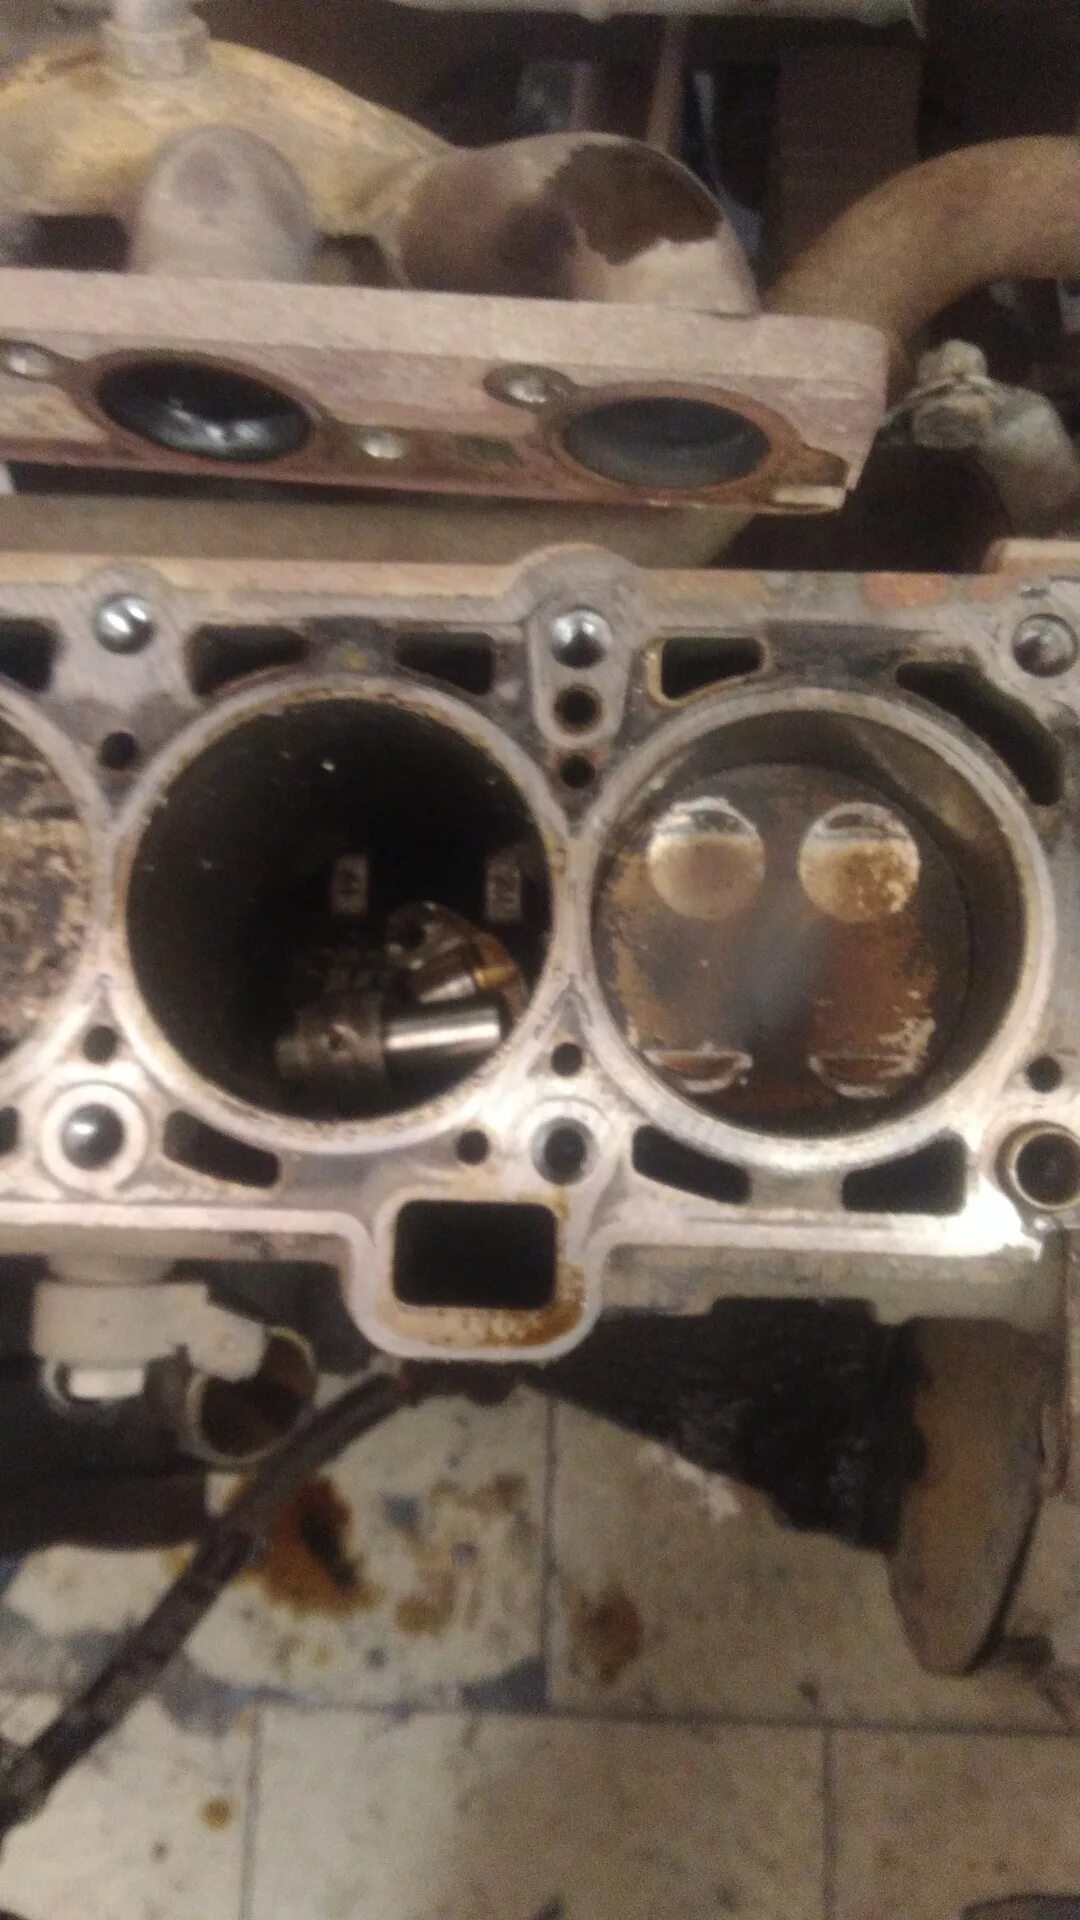 Двигатель Гранта 8 клапанов 11186 гнет ли клапана. Погнуло клапана Гранта 8 клапанная. Загнуло клапана Приора 16 клапанов. Погнуло клапана Гранта 8 клап. Гранта 87 л с гнет клапана